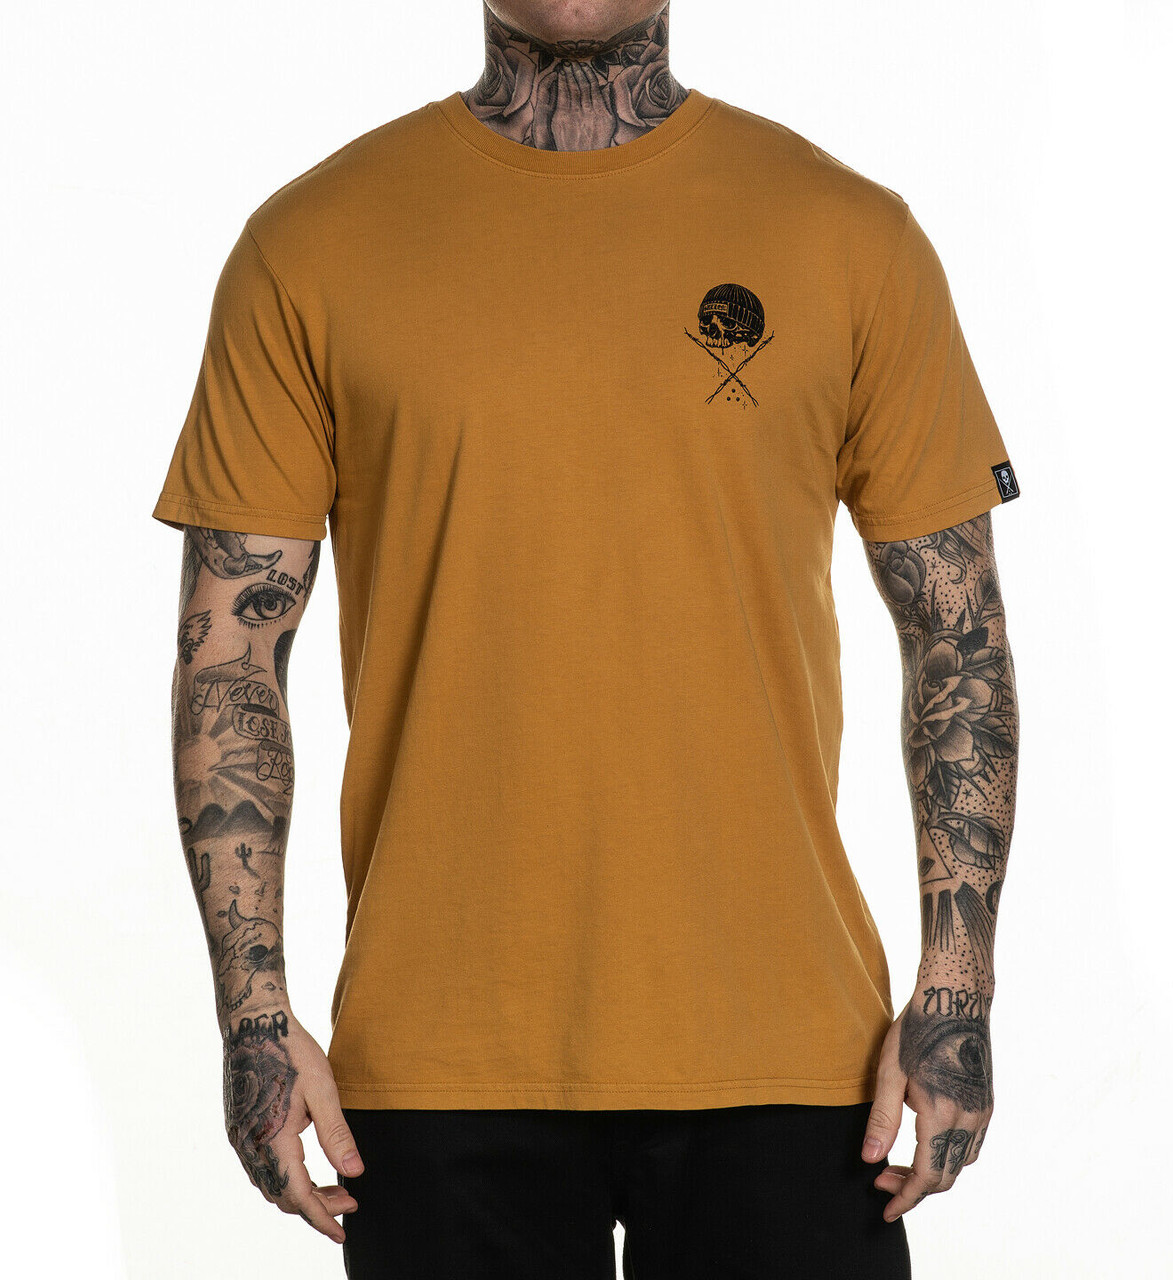 Sullen Lifers Jail Prisoner Drama Skulls Roses Tattoos Urban T Shirt ...